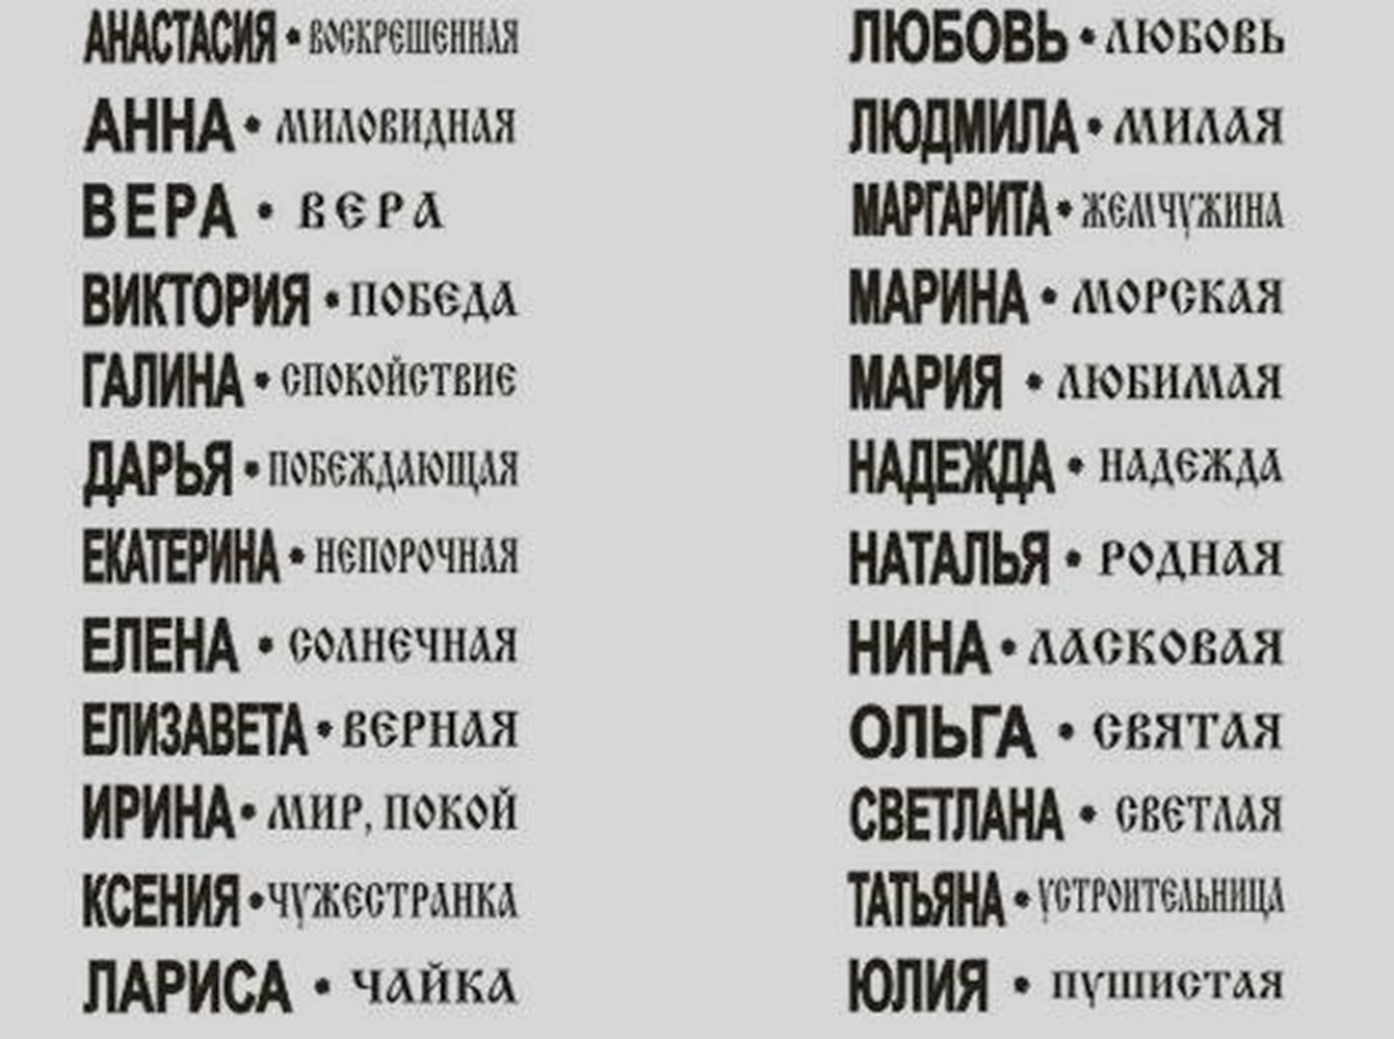 Значение имени в переводе на русский